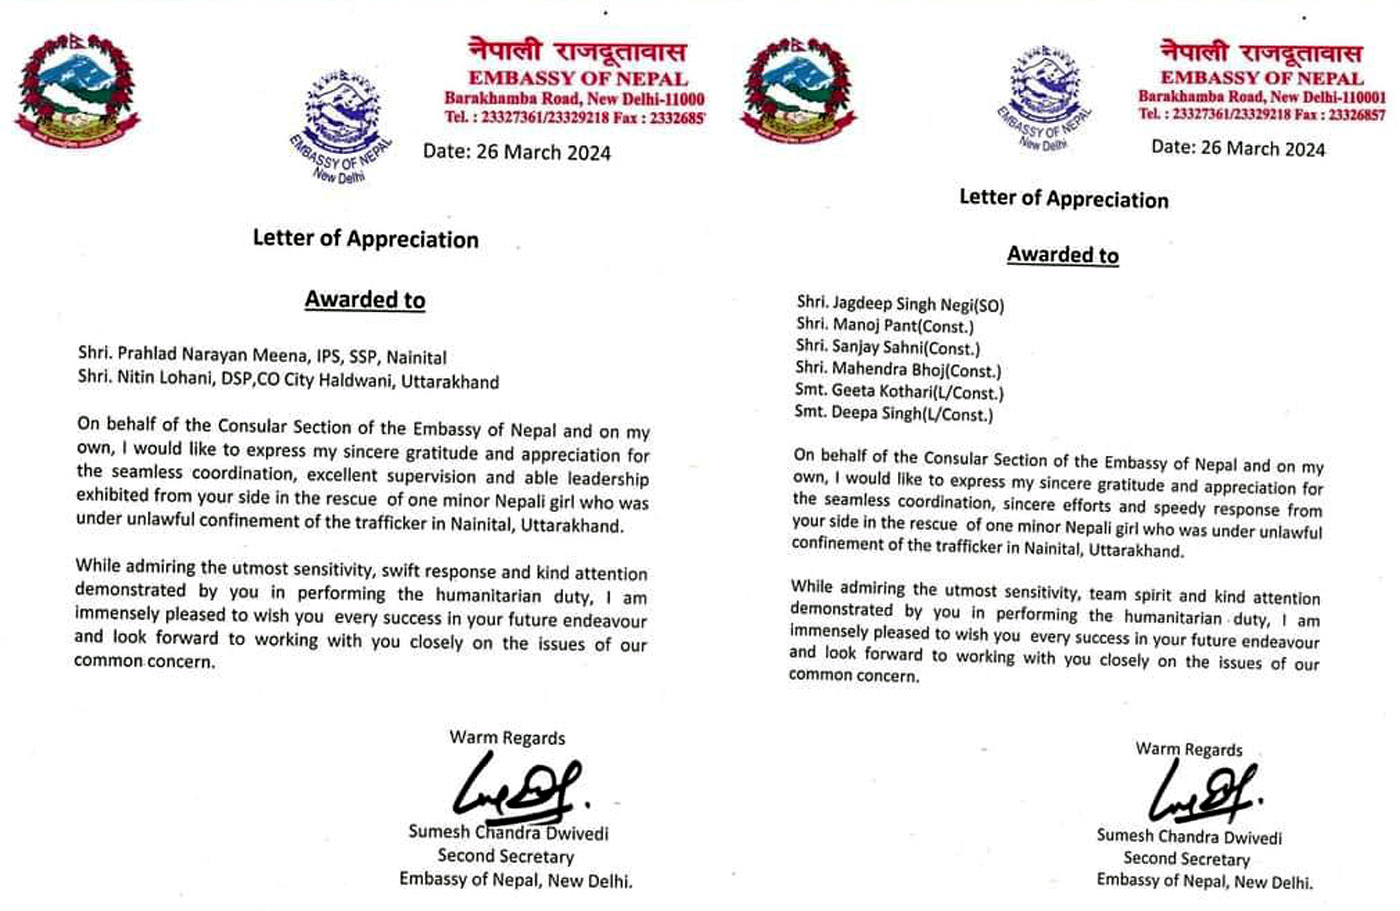 नेपाली राजदूतावास की ओर से नैनीताल पुलिस को भेजा गया प्रशस्ति पत्र।